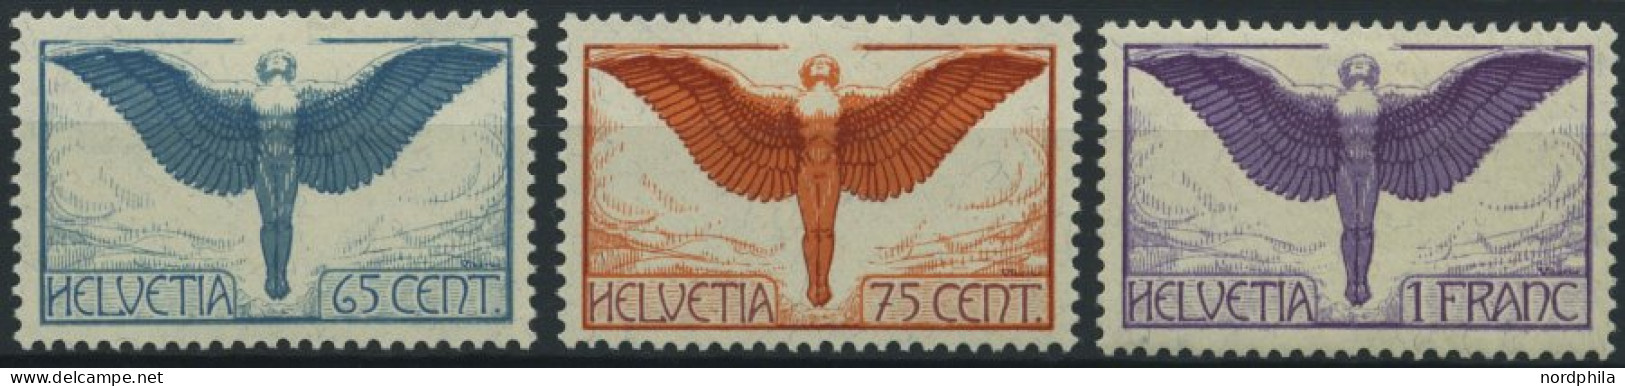 SCHWEIZ BUNDESPOST 189-91x , 1924, Flugpostmarken, Gewöhnliches Papier, Falzrest, Prachtsatz - Nuevos